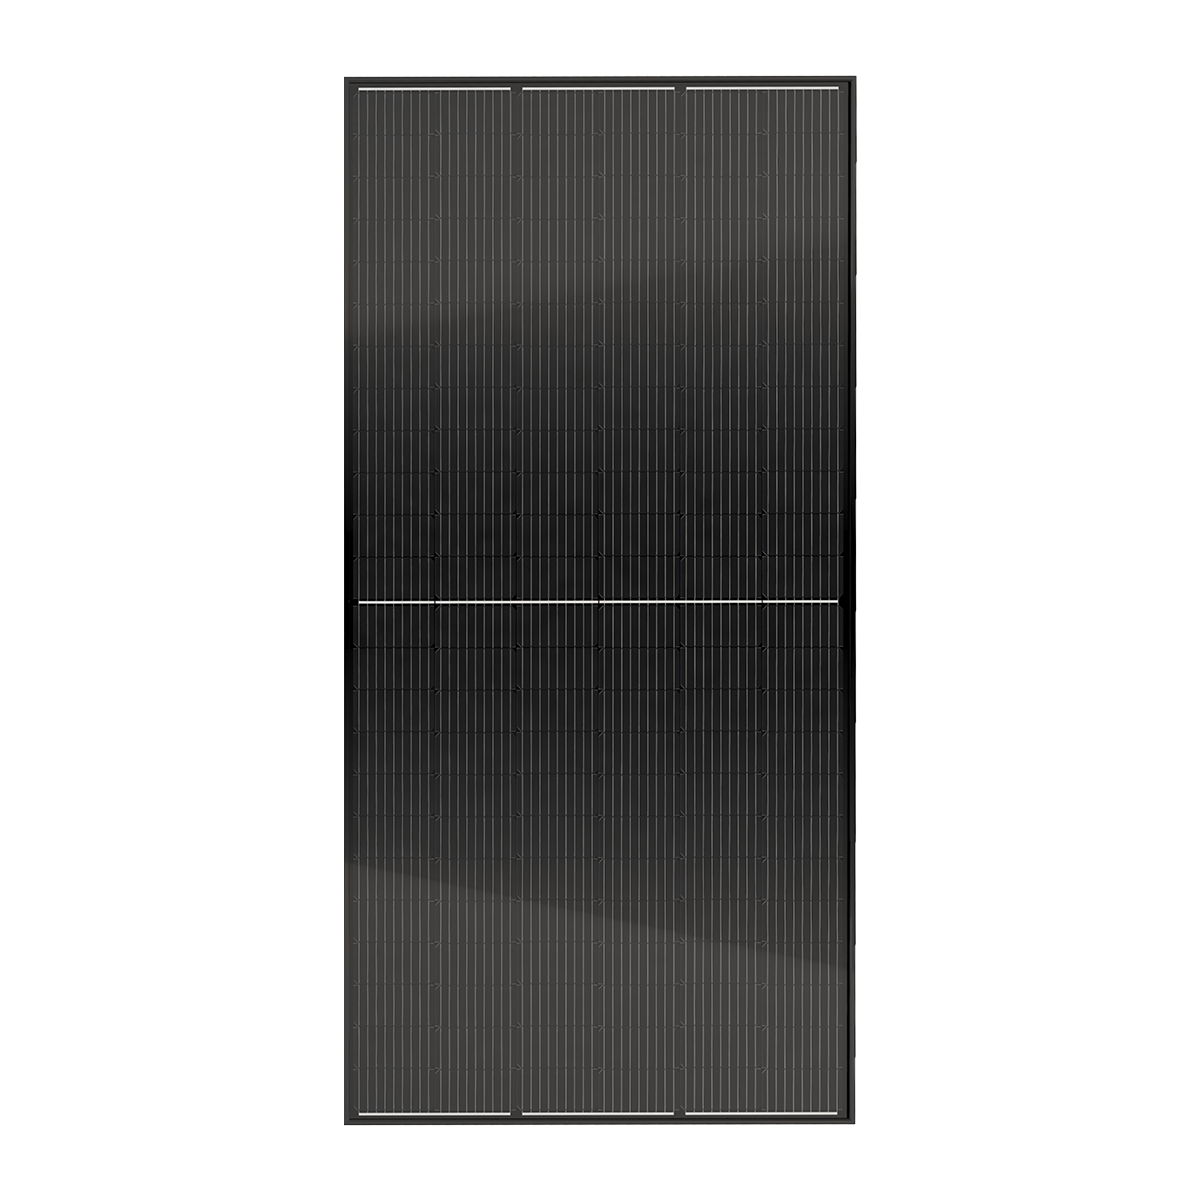 TommaTech 440Wp 144PM Full Black Güneş Paneli